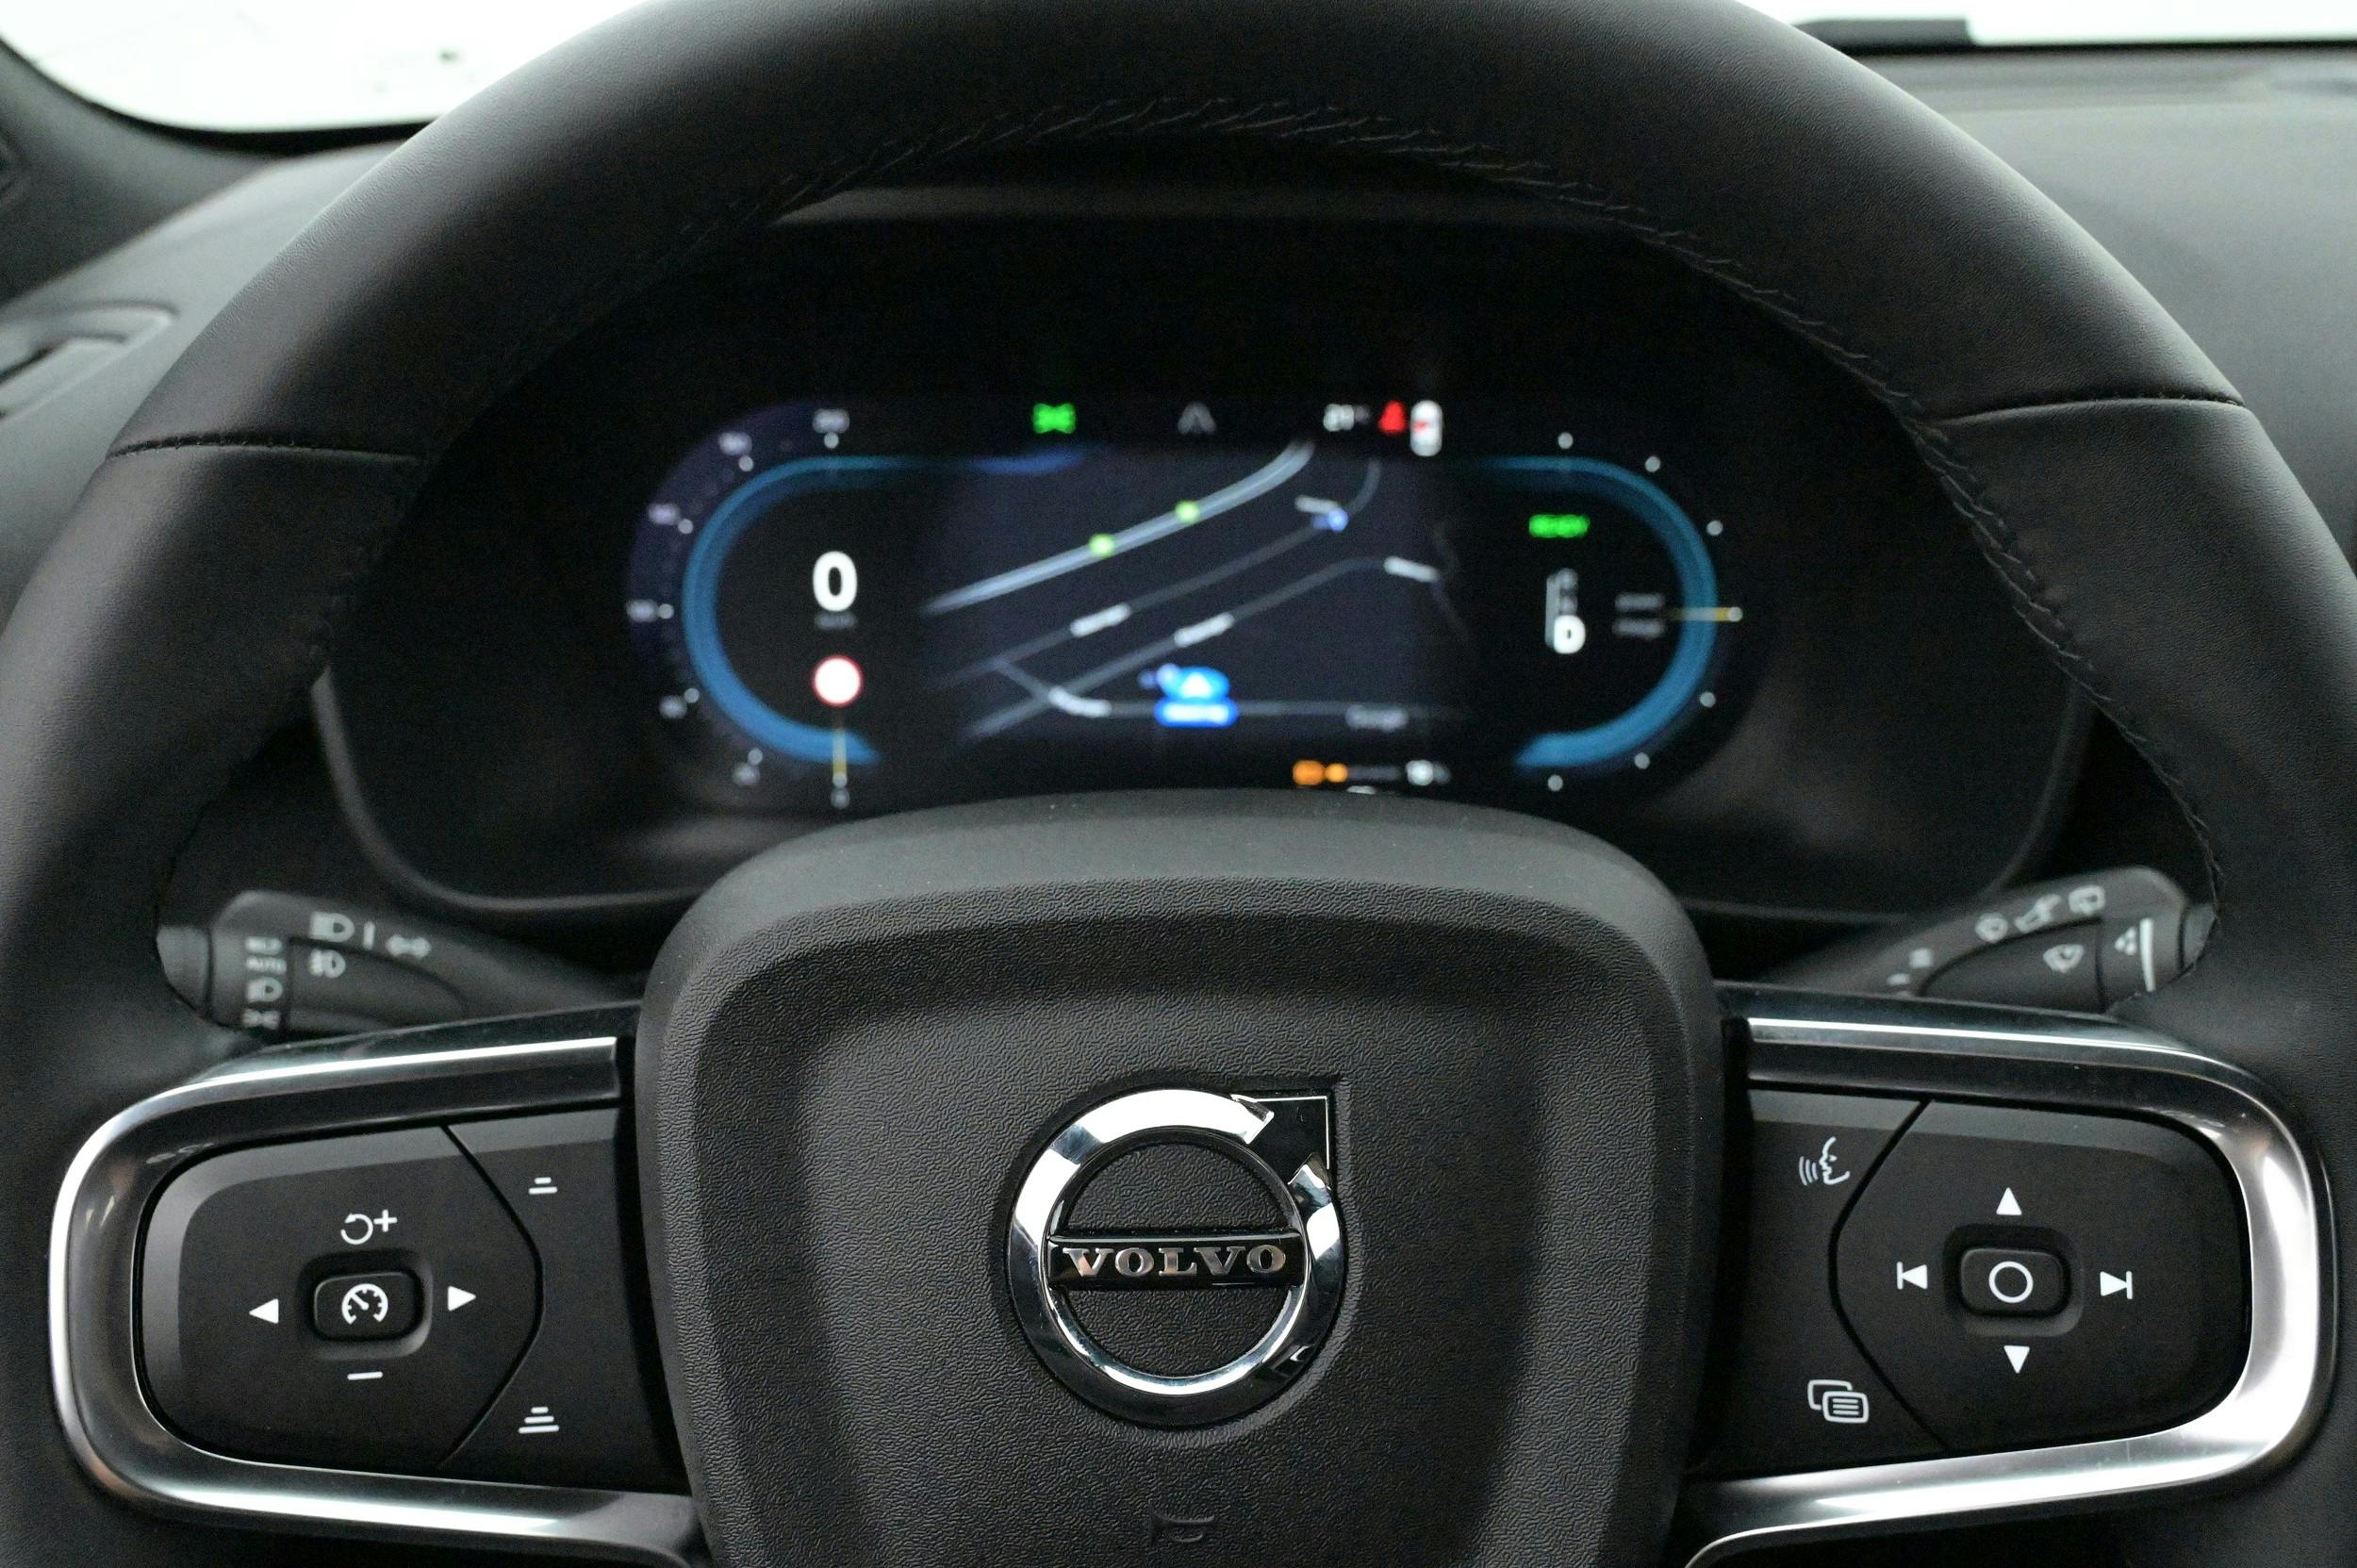 Volvo XC40